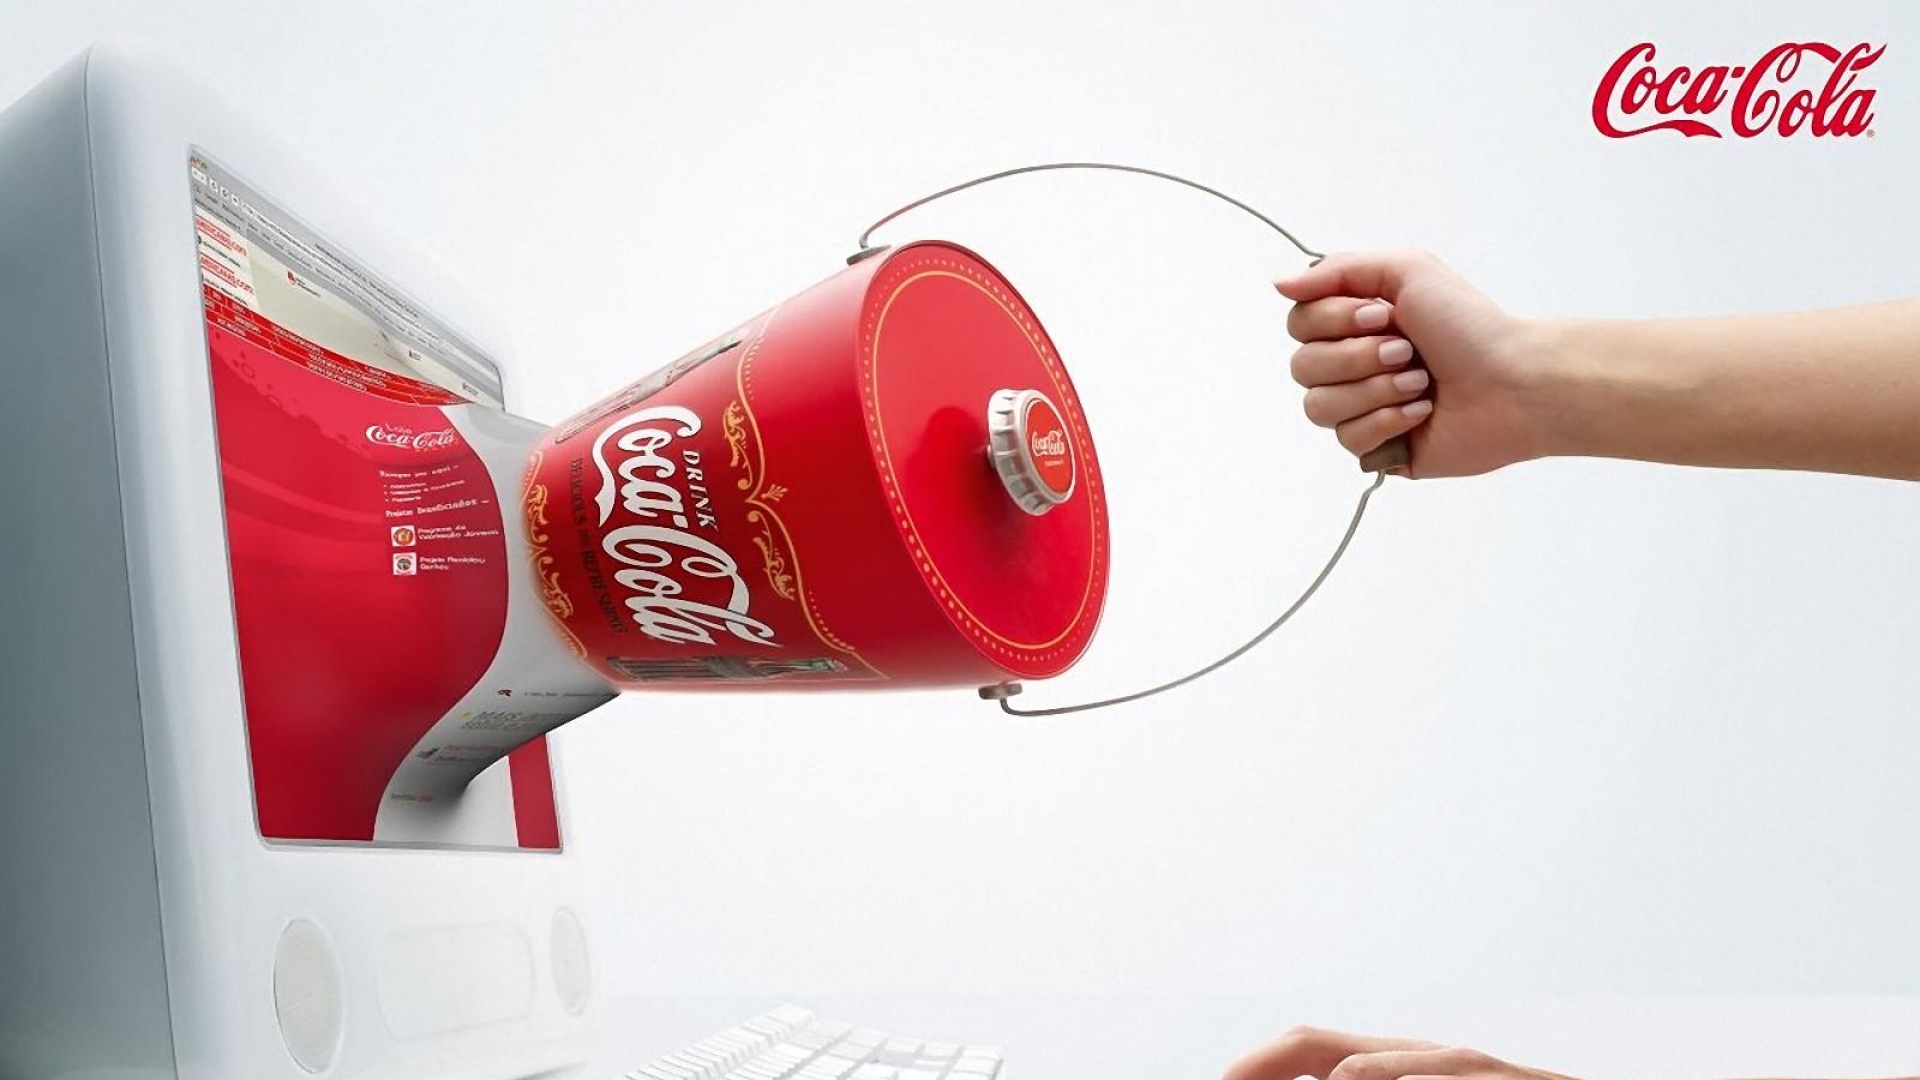 Скачать обои бесплатно Кока Кола, Продукты картинка на рабочий стол ПК